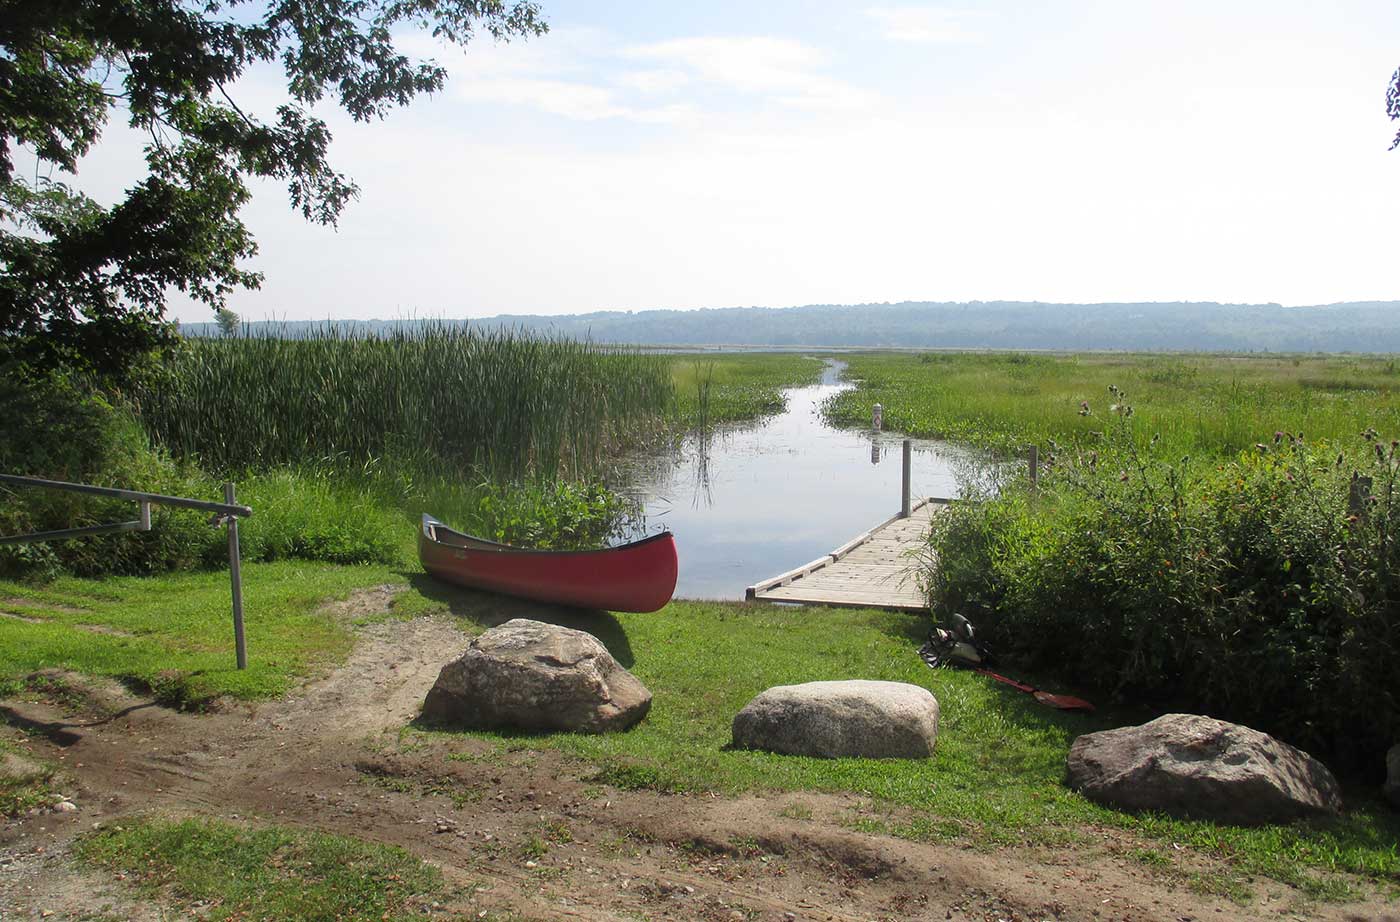 canoe on shore next to waterway